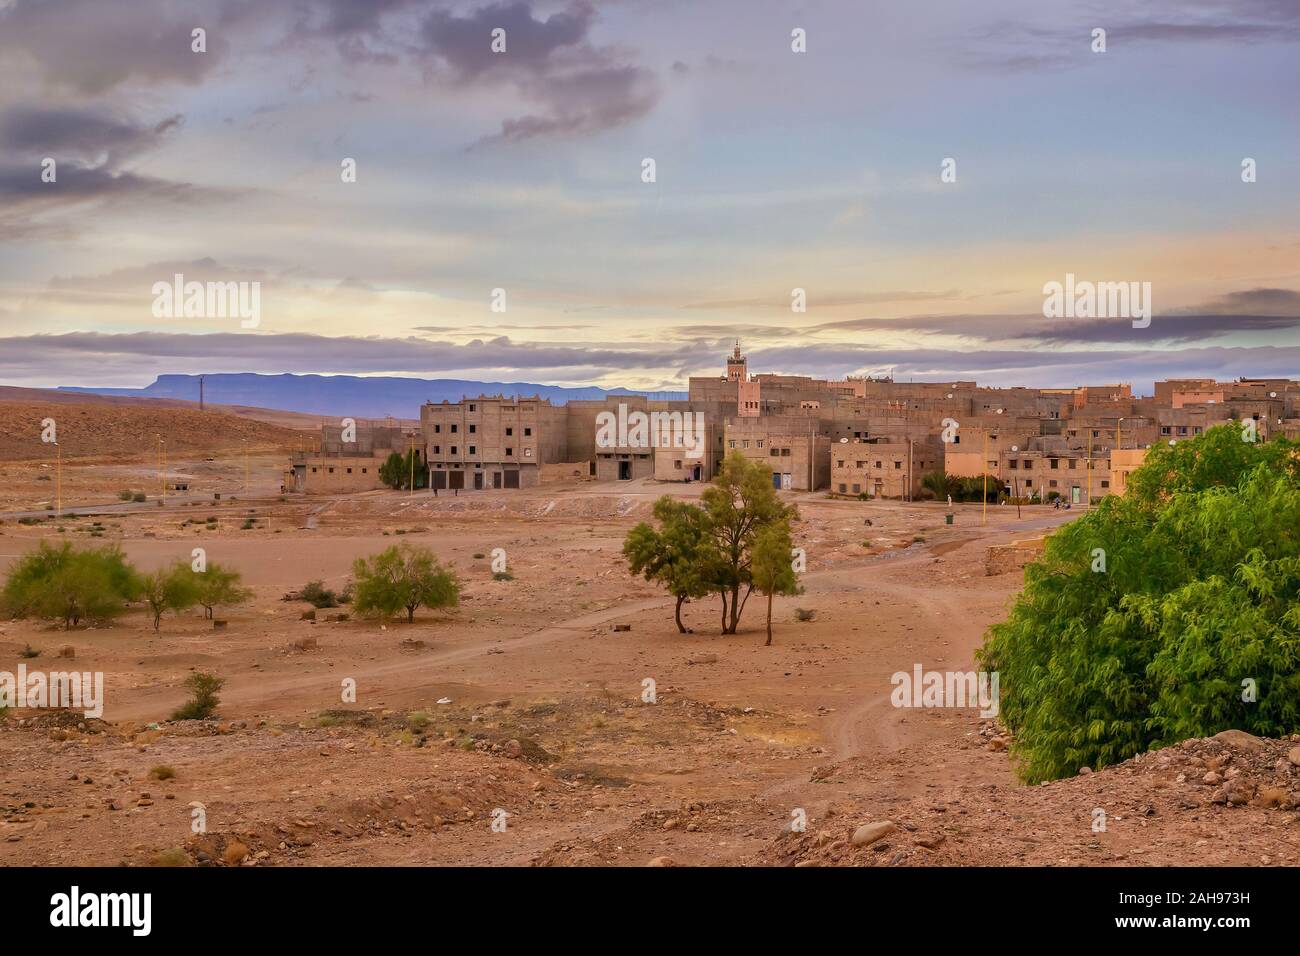 Gebäude in der Wüste, als Nachbarschaft hat am Rand der Sahara, in Zagora, einer Stadt in der draa Velley im Südosten Marokkos gebaut worden. Stockfoto